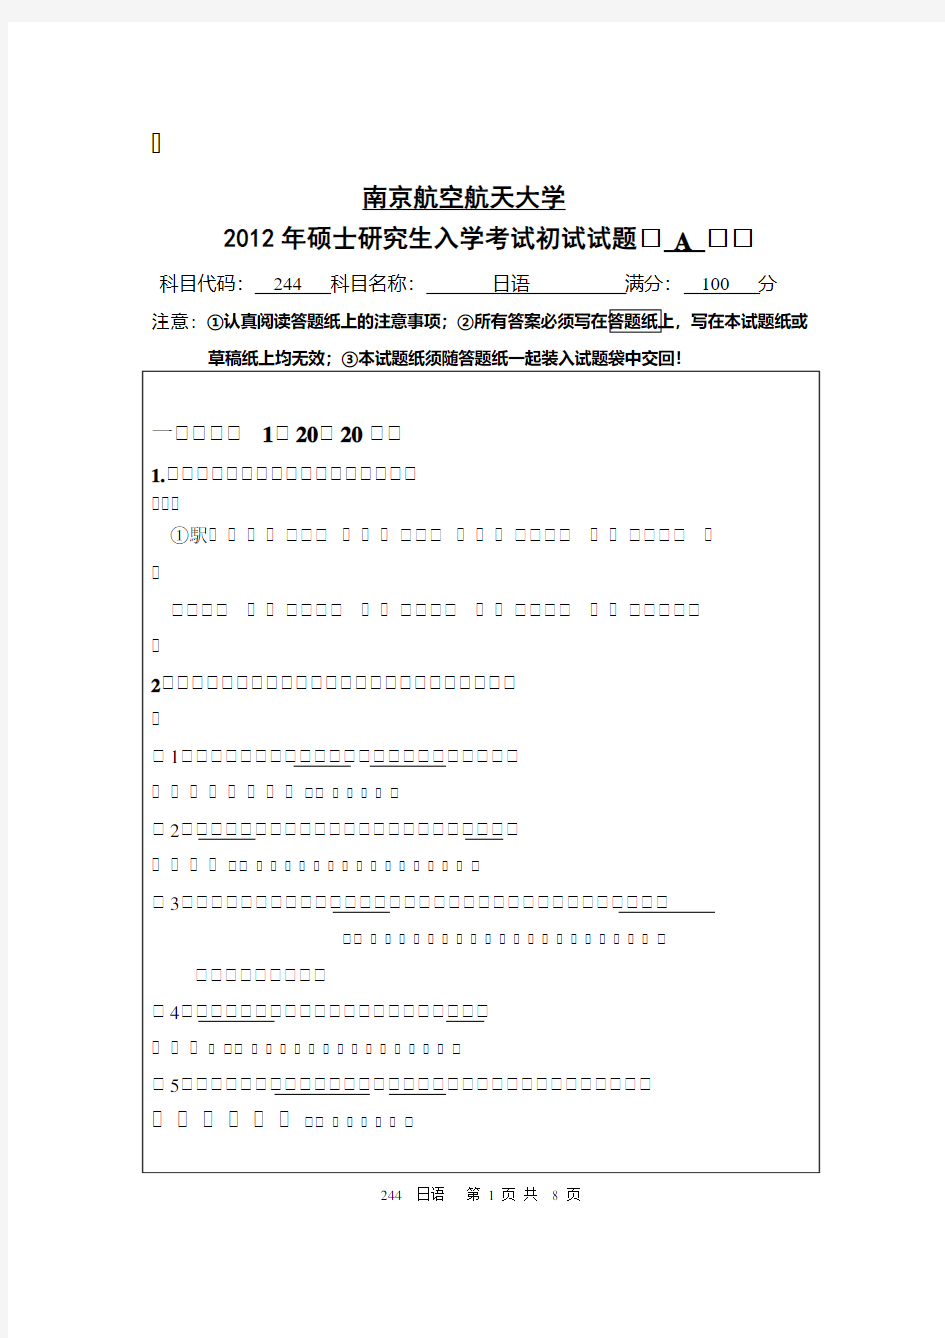 南京航空航天大学-2012年-硕士研究生招生考试初试试题(A卷)-244日语